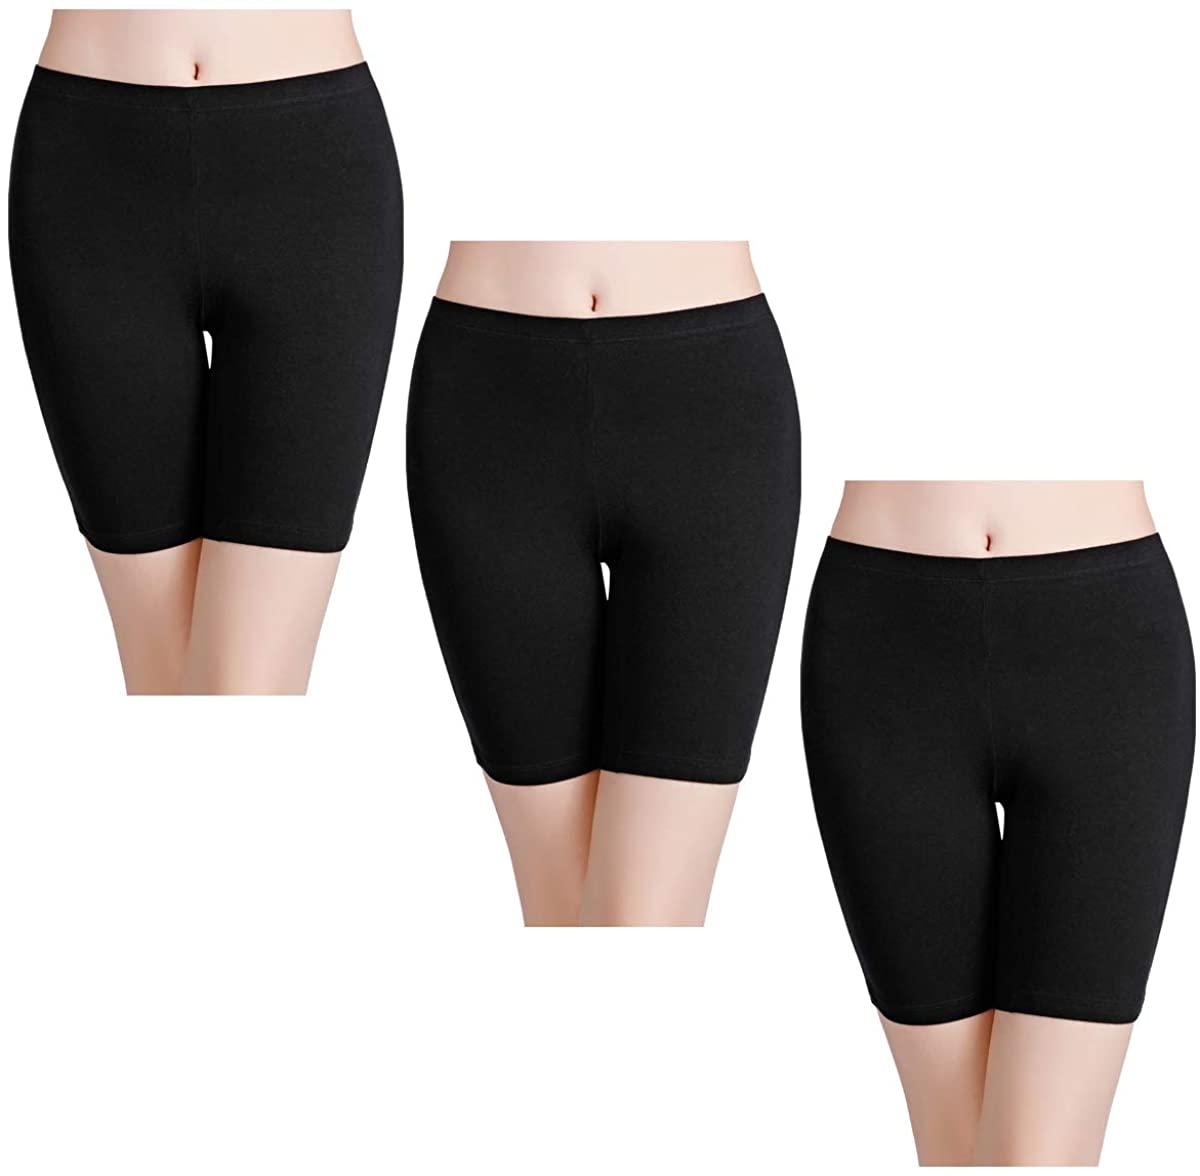 wirarpa Women's Anti Chafing Cotton Underwear Boy, Black-3 Pack, Size ...